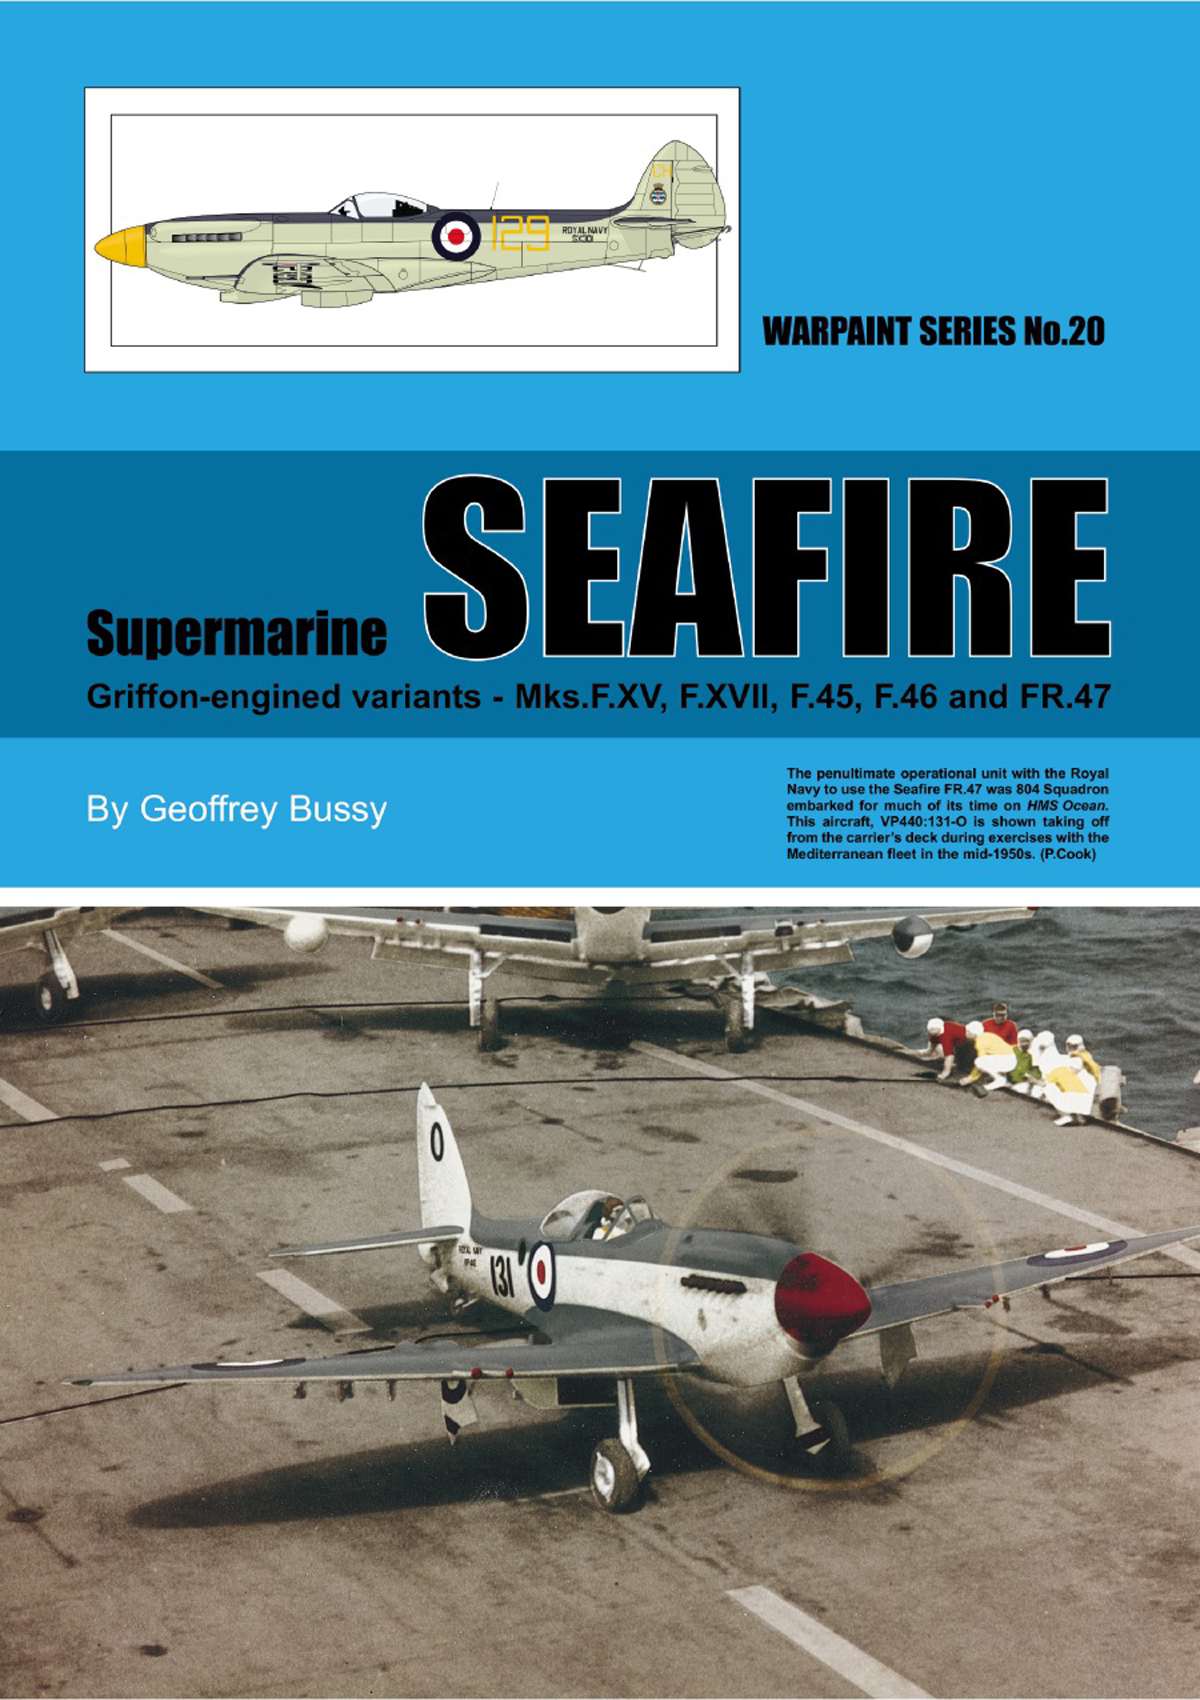 N20 - Supermarine Seafire